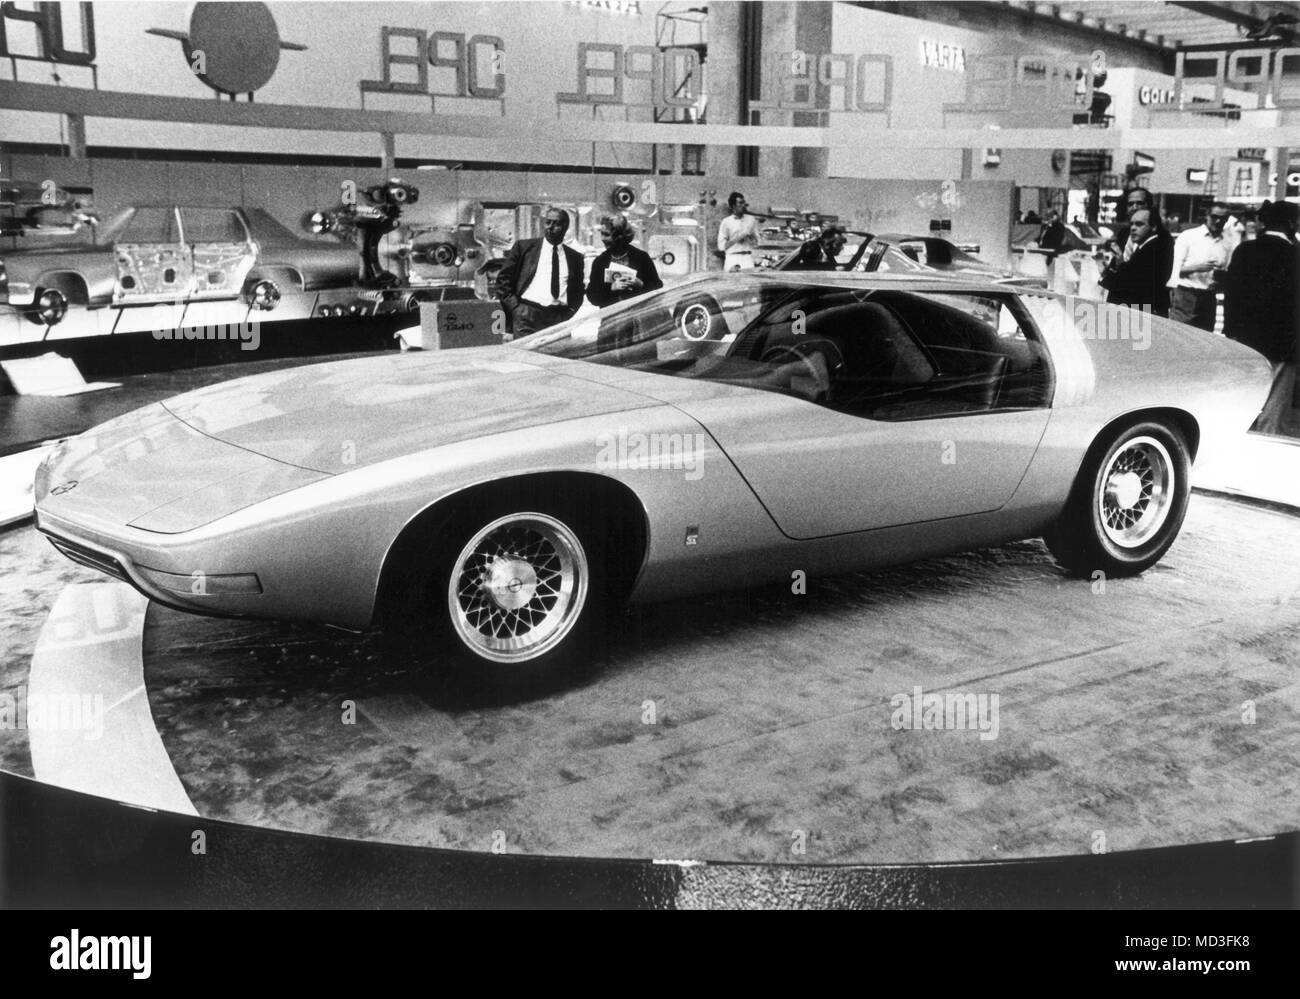 Une Opel Diplomat CD à l'International Motor Show de Francfort am Main, enregistré sur 16.09.1969. Le design futuriste de la voiture a été conçu par Charles M. Jordan. Photo : Roland Witschel (c) afp - Rapport d'utilisation dans le monde entier | Banque D'Images